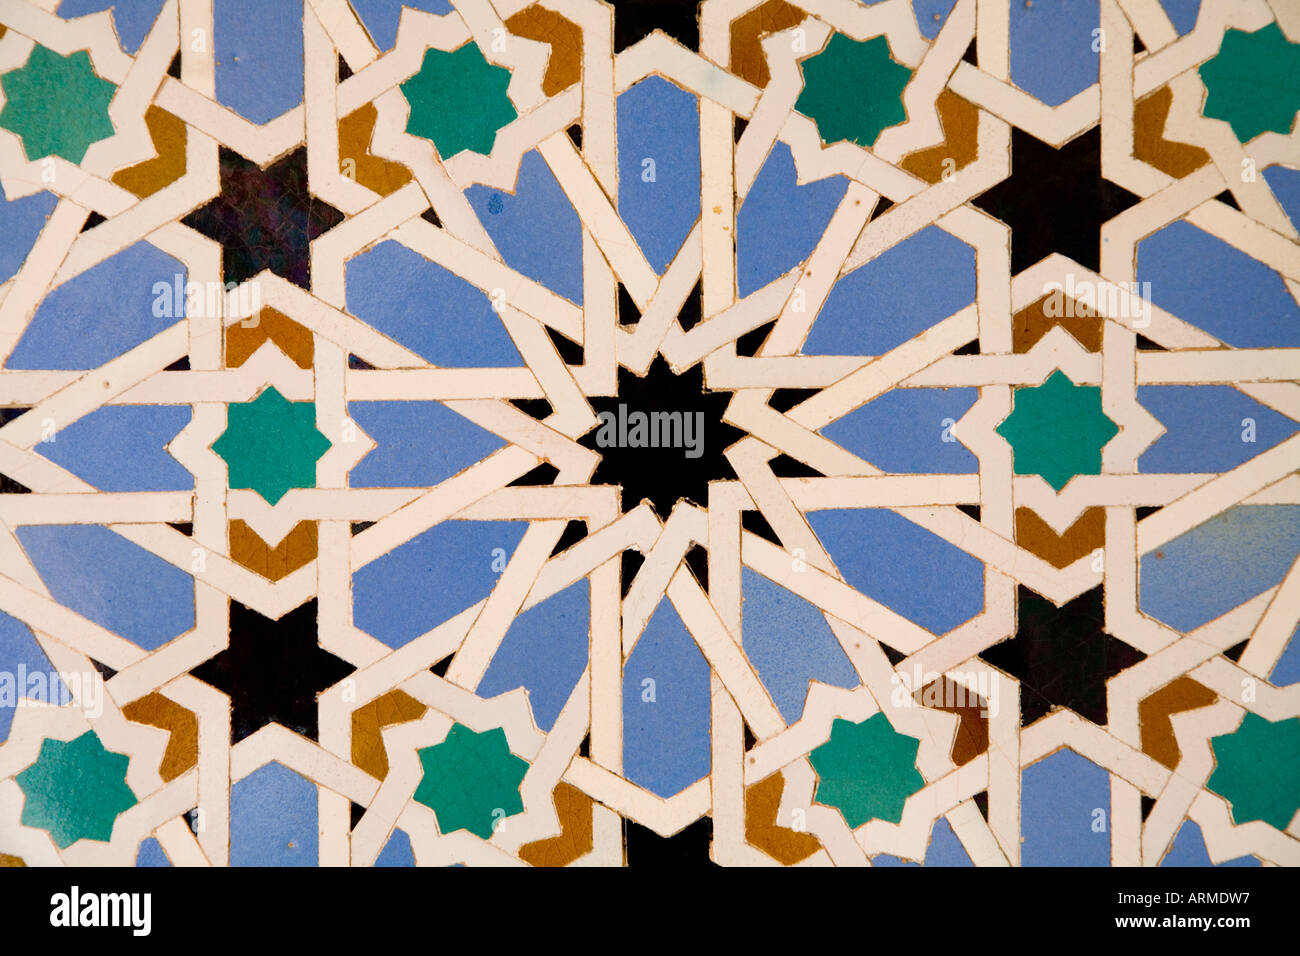 Séville, Espagne. alcazar. motifs géométriques sur les carreaux en céramique typique de l'art arabe Banque D'Images